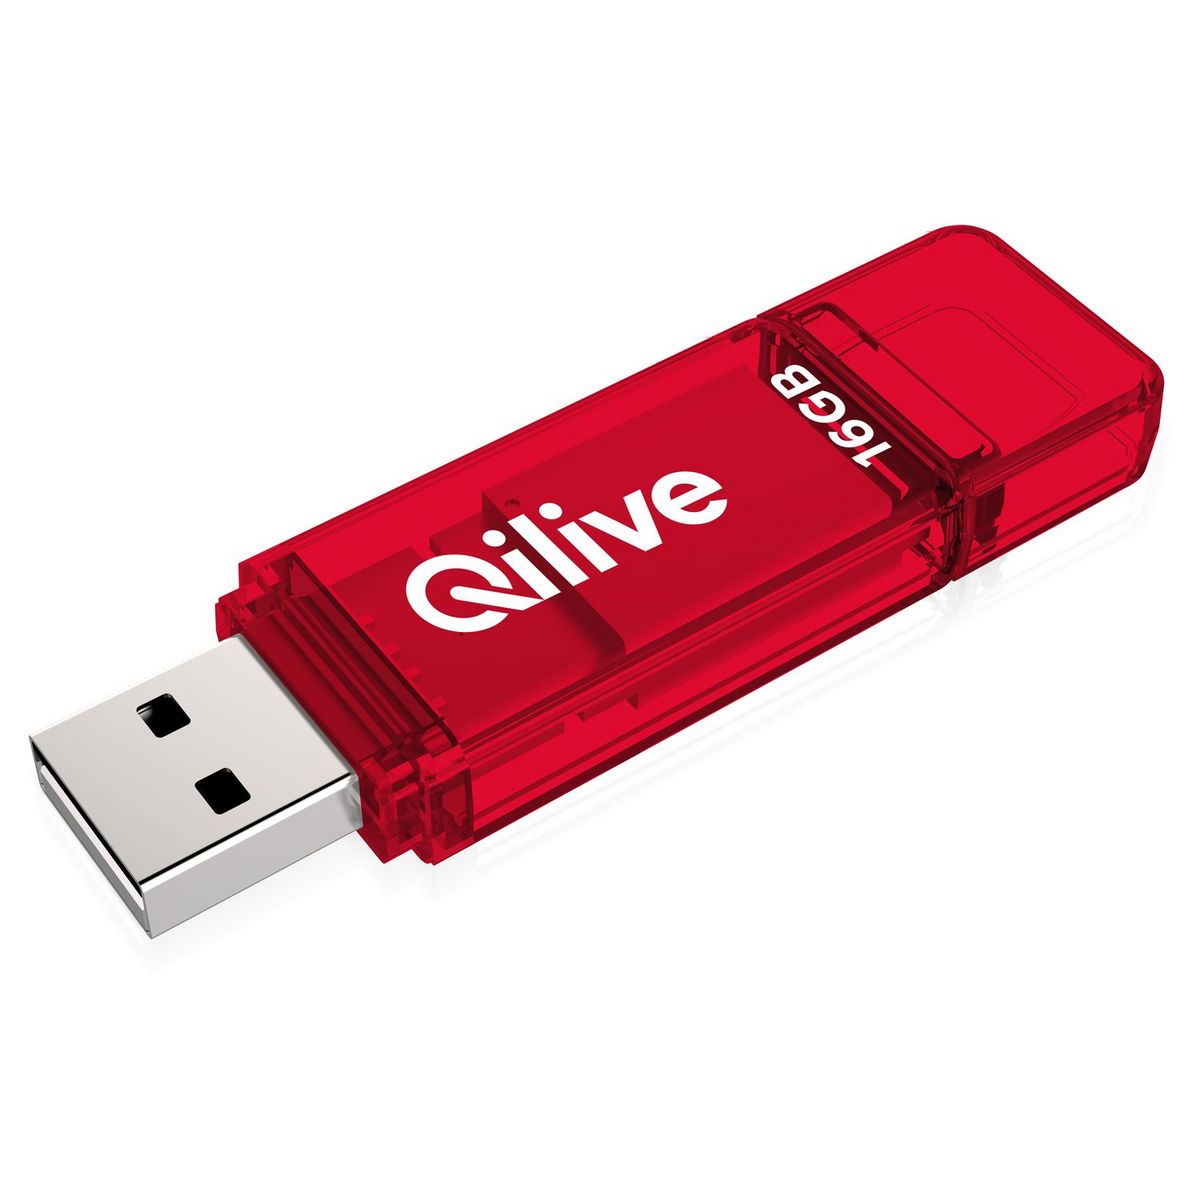 QILIVE Clé USB 16Go 2.0 Q.8391 Rouge pas cher 